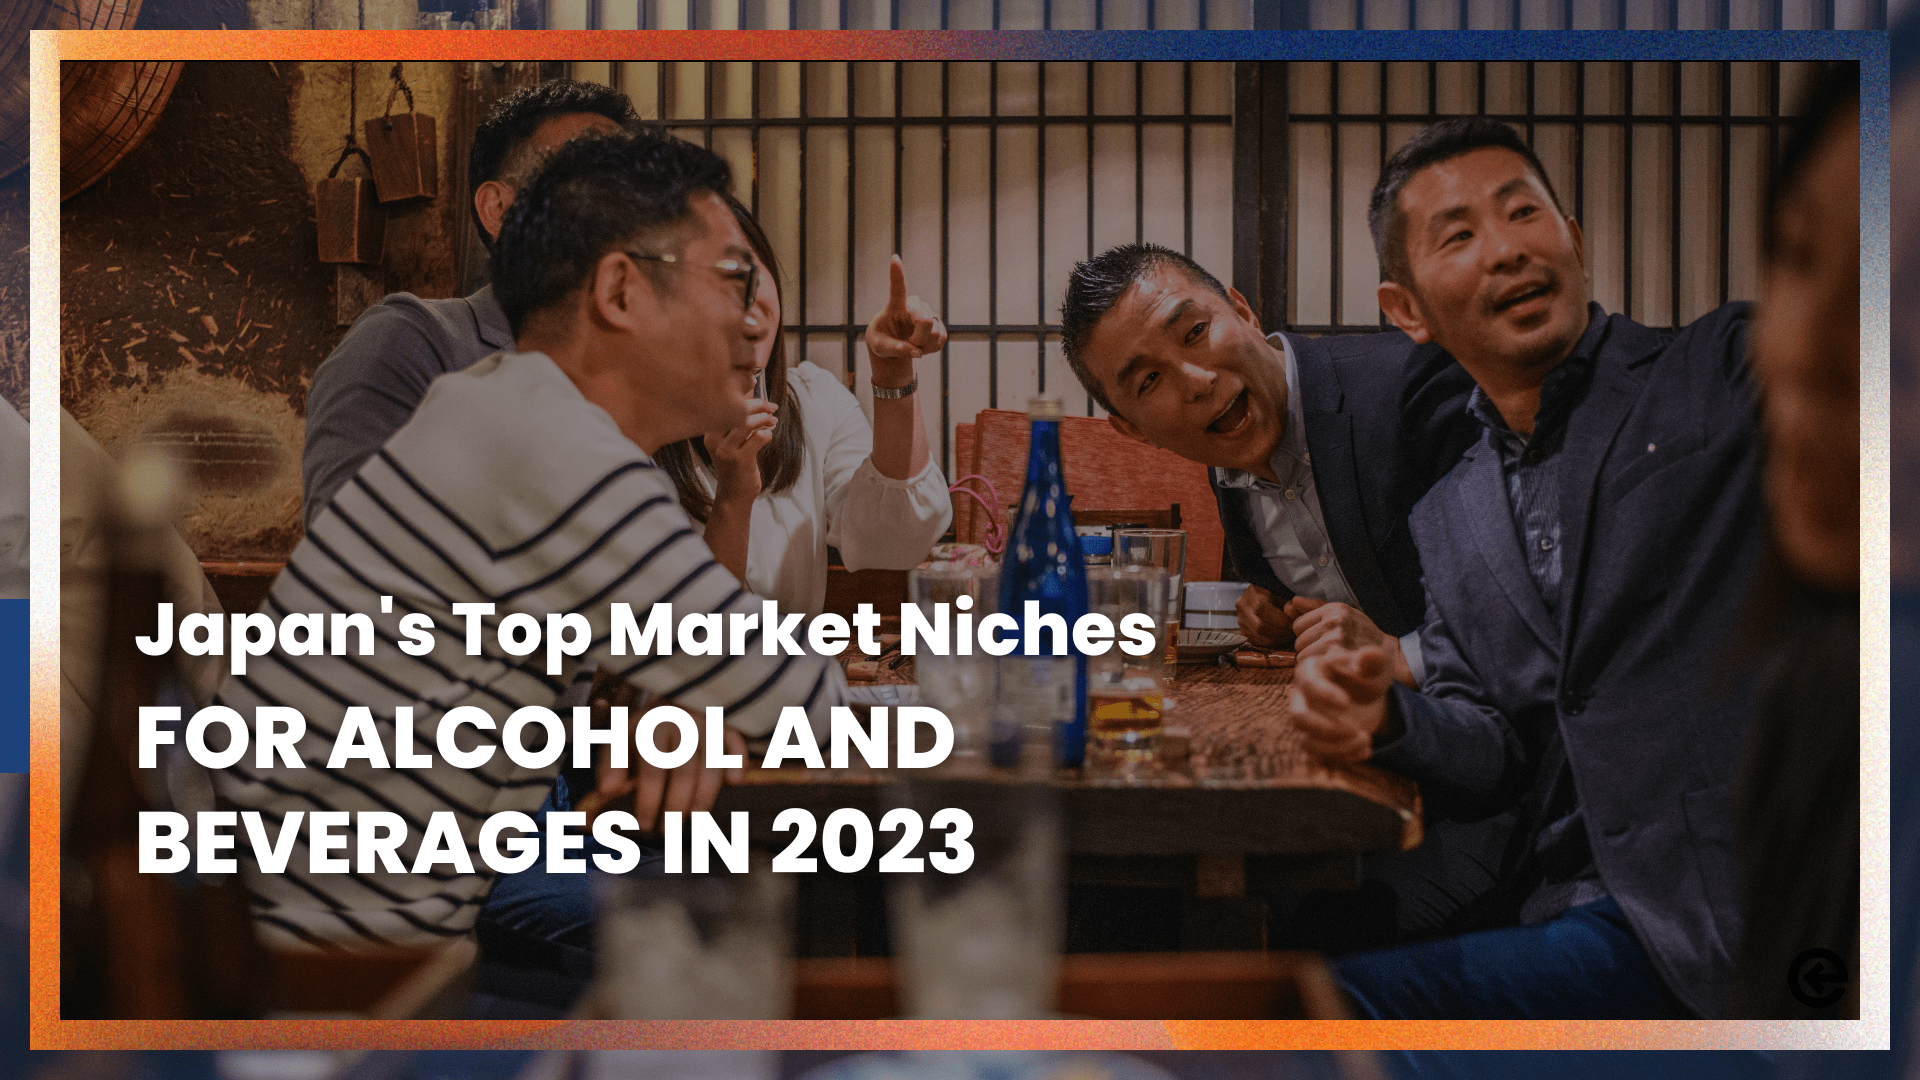 Los principales nichos de mercado del alcohol y las bebidas en Japón en 2023